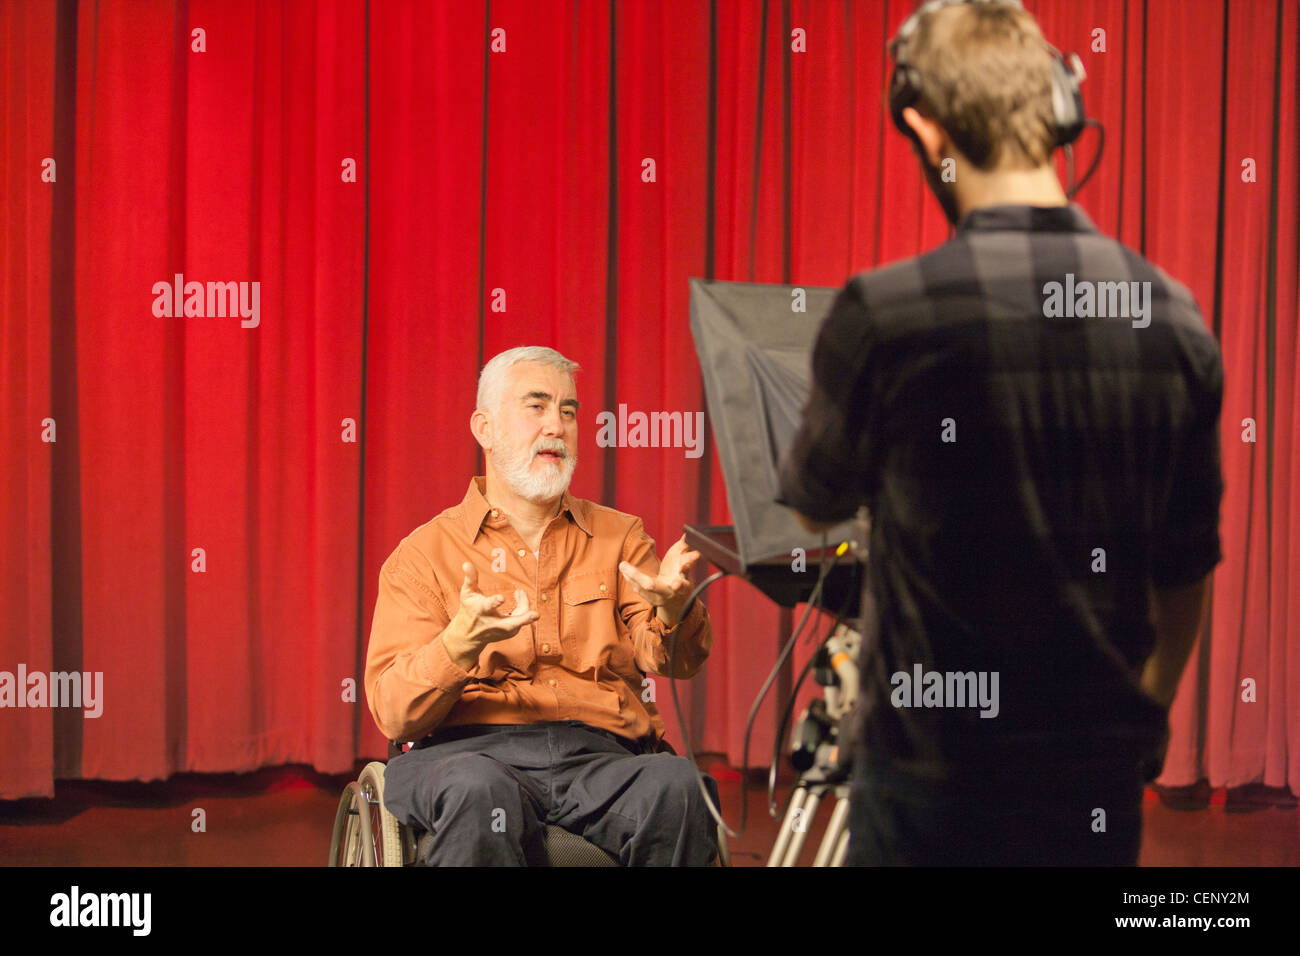 L'homme ayant la dystrophie musculaire et le diabète intervenant sur un appareil photo dans un studio de télévision Banque D'Images